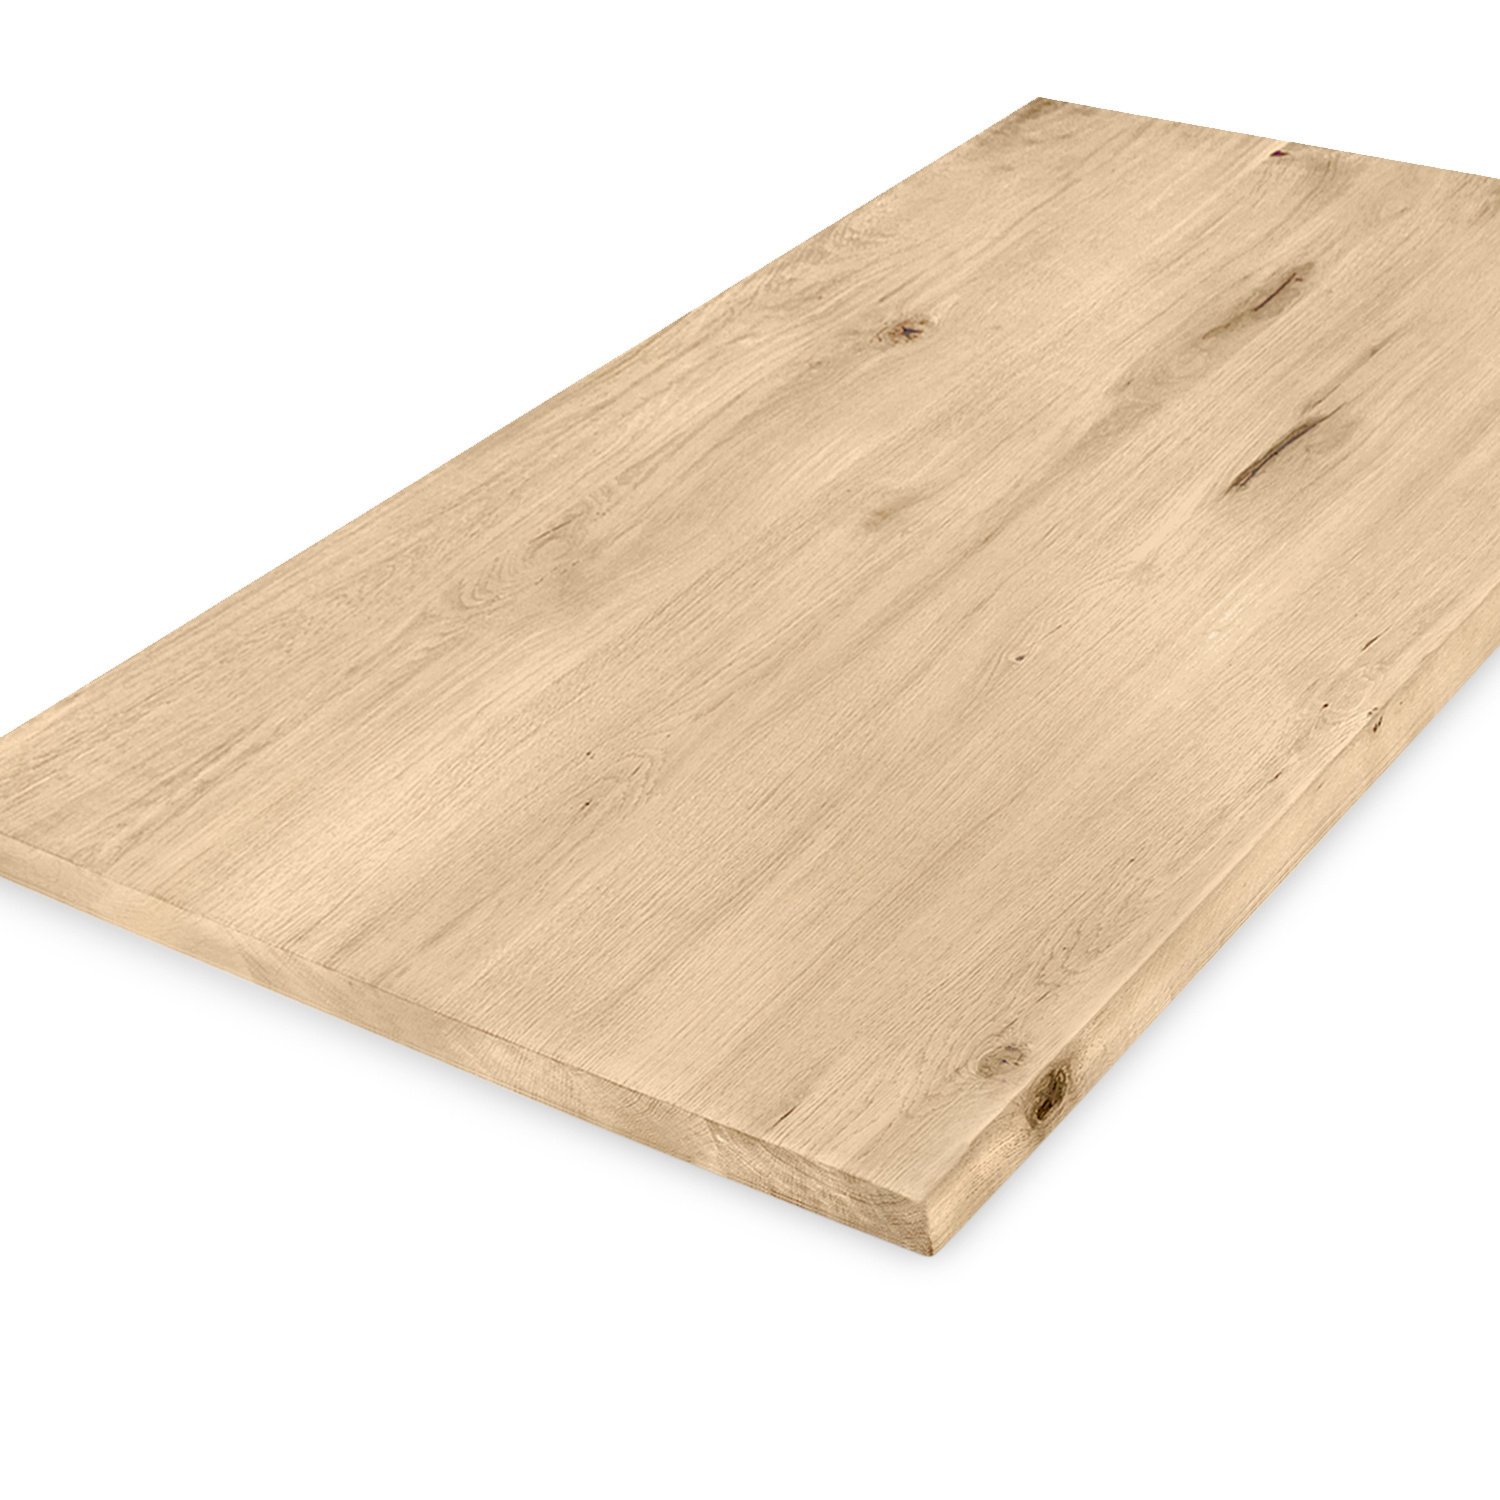  Eiken tafelblad - 3 cm dik (1-laag) - Diverse afmetingen - extra rustiek Europees eikenhout - met extra brede lamellen (circa 14-20 cm) - verlijmd kd 8-12%